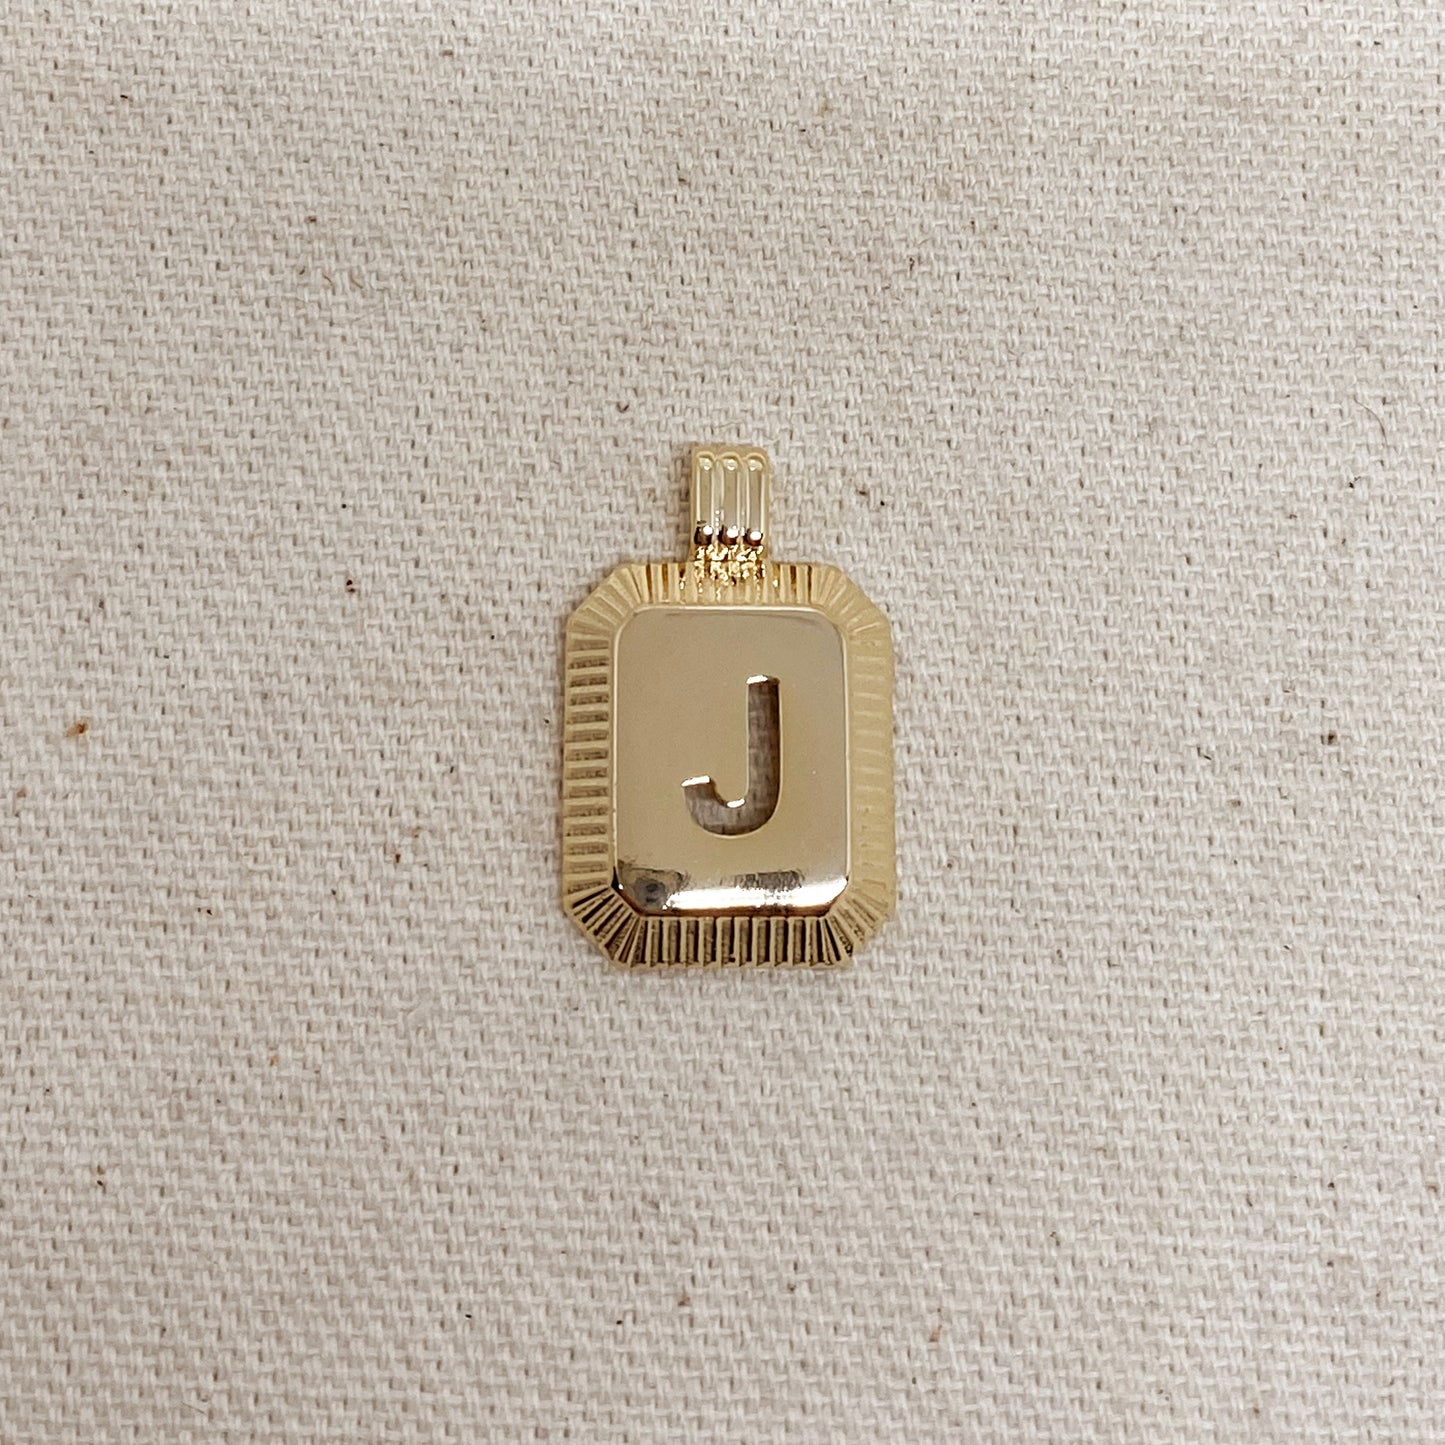 GoldFi 18k Gold Filled Initial Plate Pendant Letter J